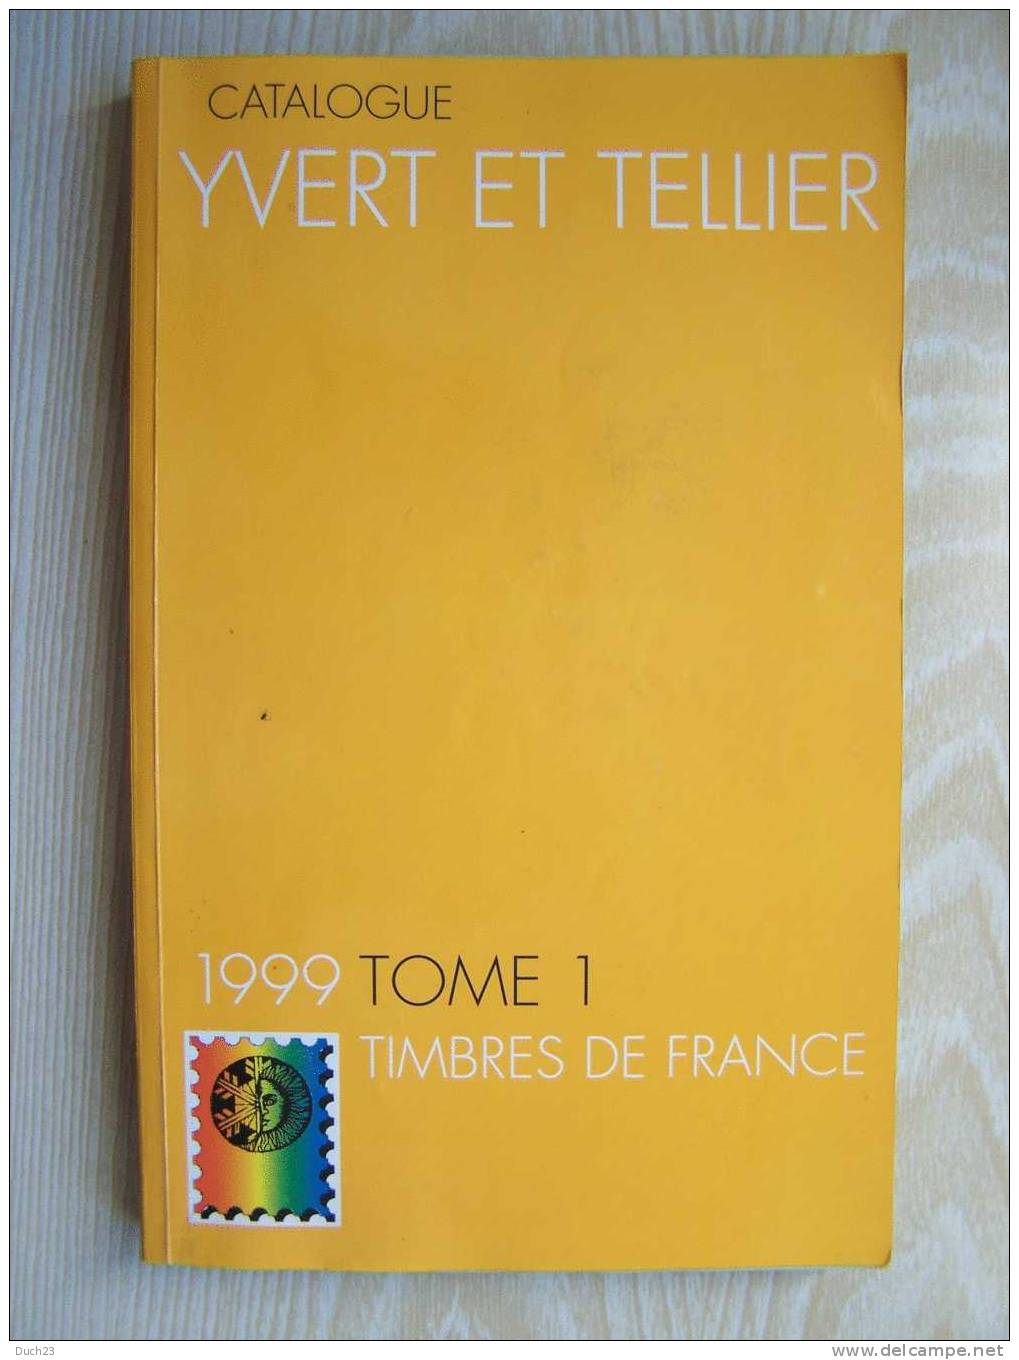 CATALOGUE DE COTATION YVERT ET TELLIER ANNEE 1999 TOME 1  TRES BON ETAT   REF CD - Frankreich